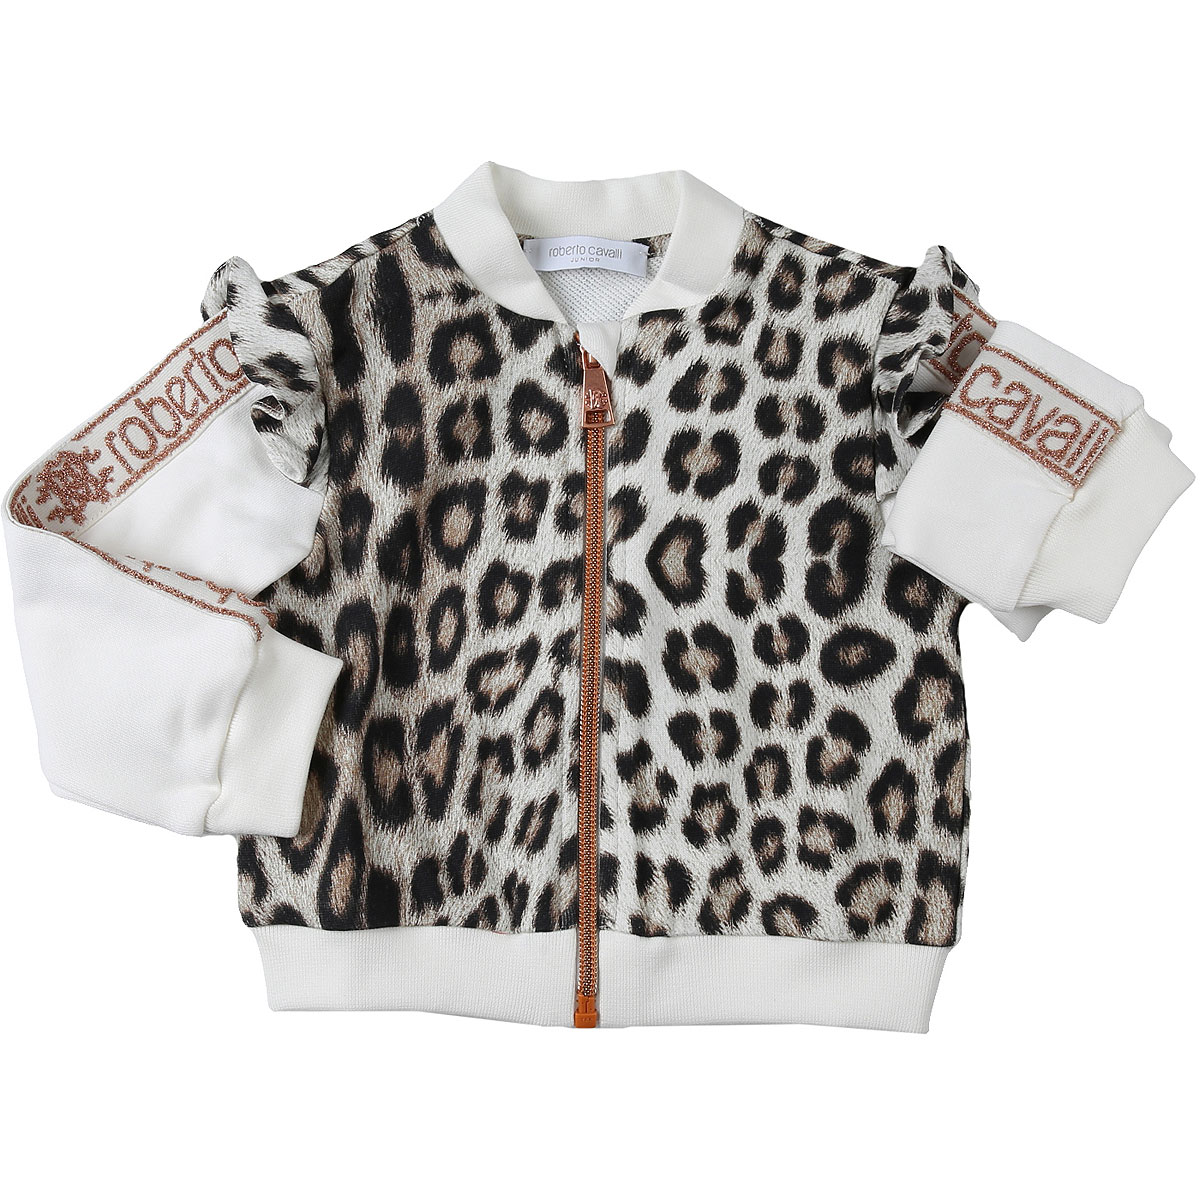 Roberto Cavalli Baby Sweatshirt & Kapuzenpullover für Mädchen Günstig im Sale, Leopardenfarbig, Baumwolle, 2017, 12M 18M 2Y 3Y